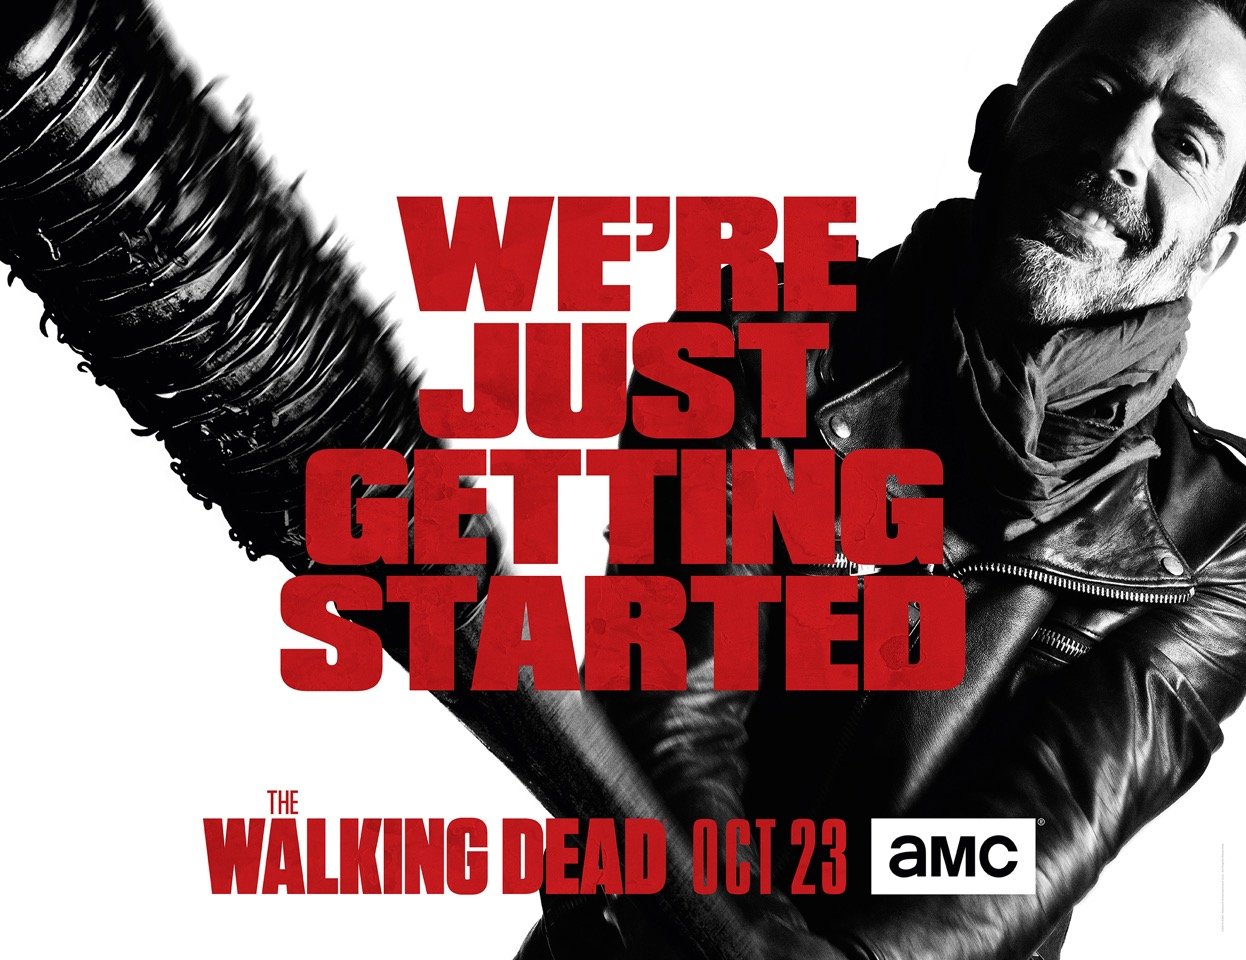 The key art for 'The Walking Dead' Season 7